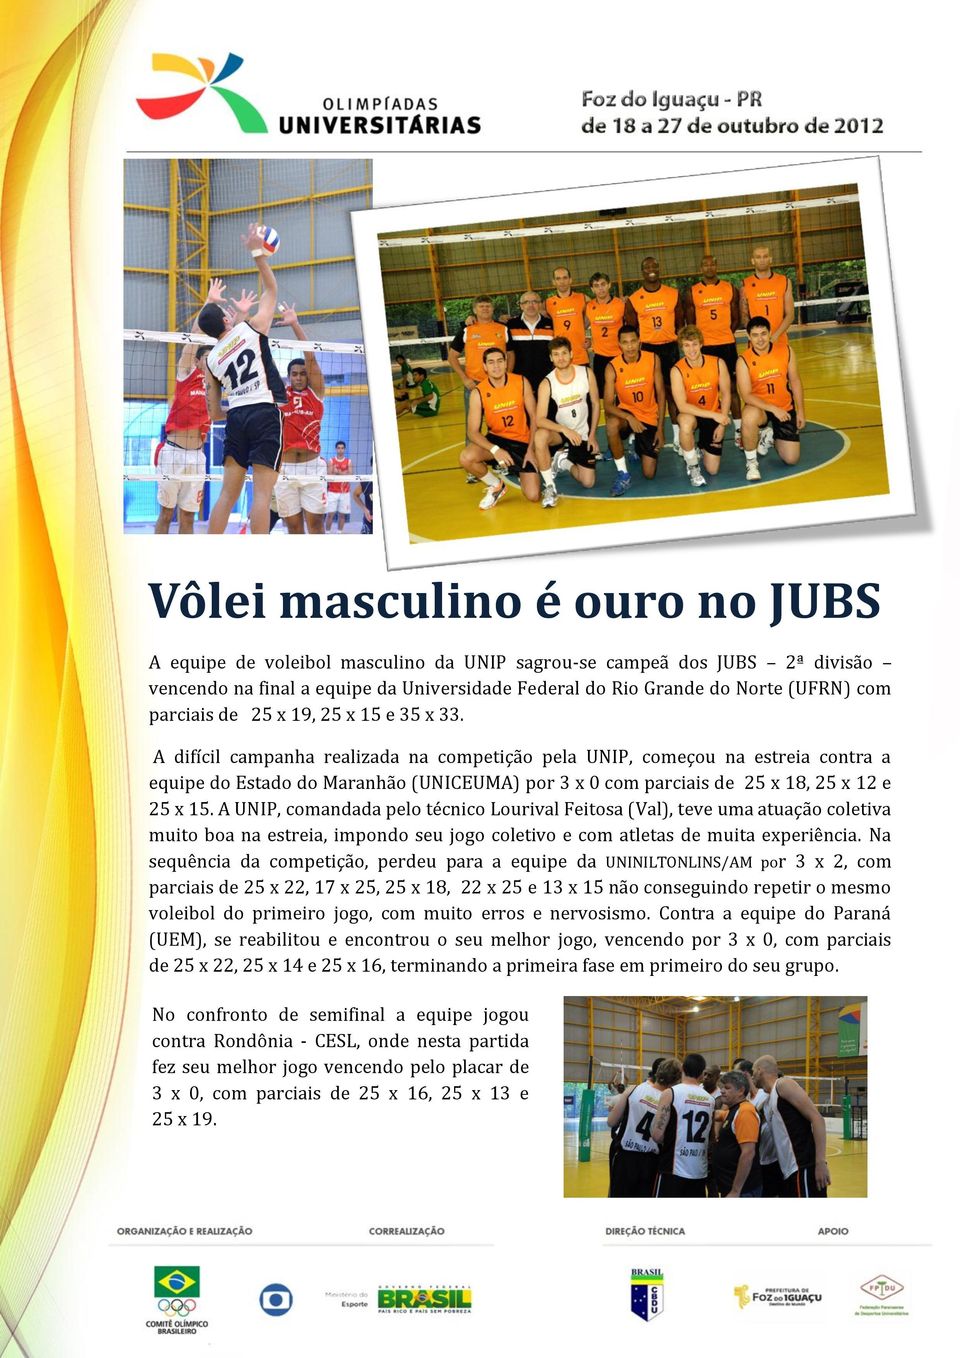 A difícil campanha realizada na competição pela UNIP, começou na estreia contra a equipe do Estado do Maranhão (UNICEUMA) por 3 x 0 com parciais de 25 x 18, 25 x 12 e 25 x 15.